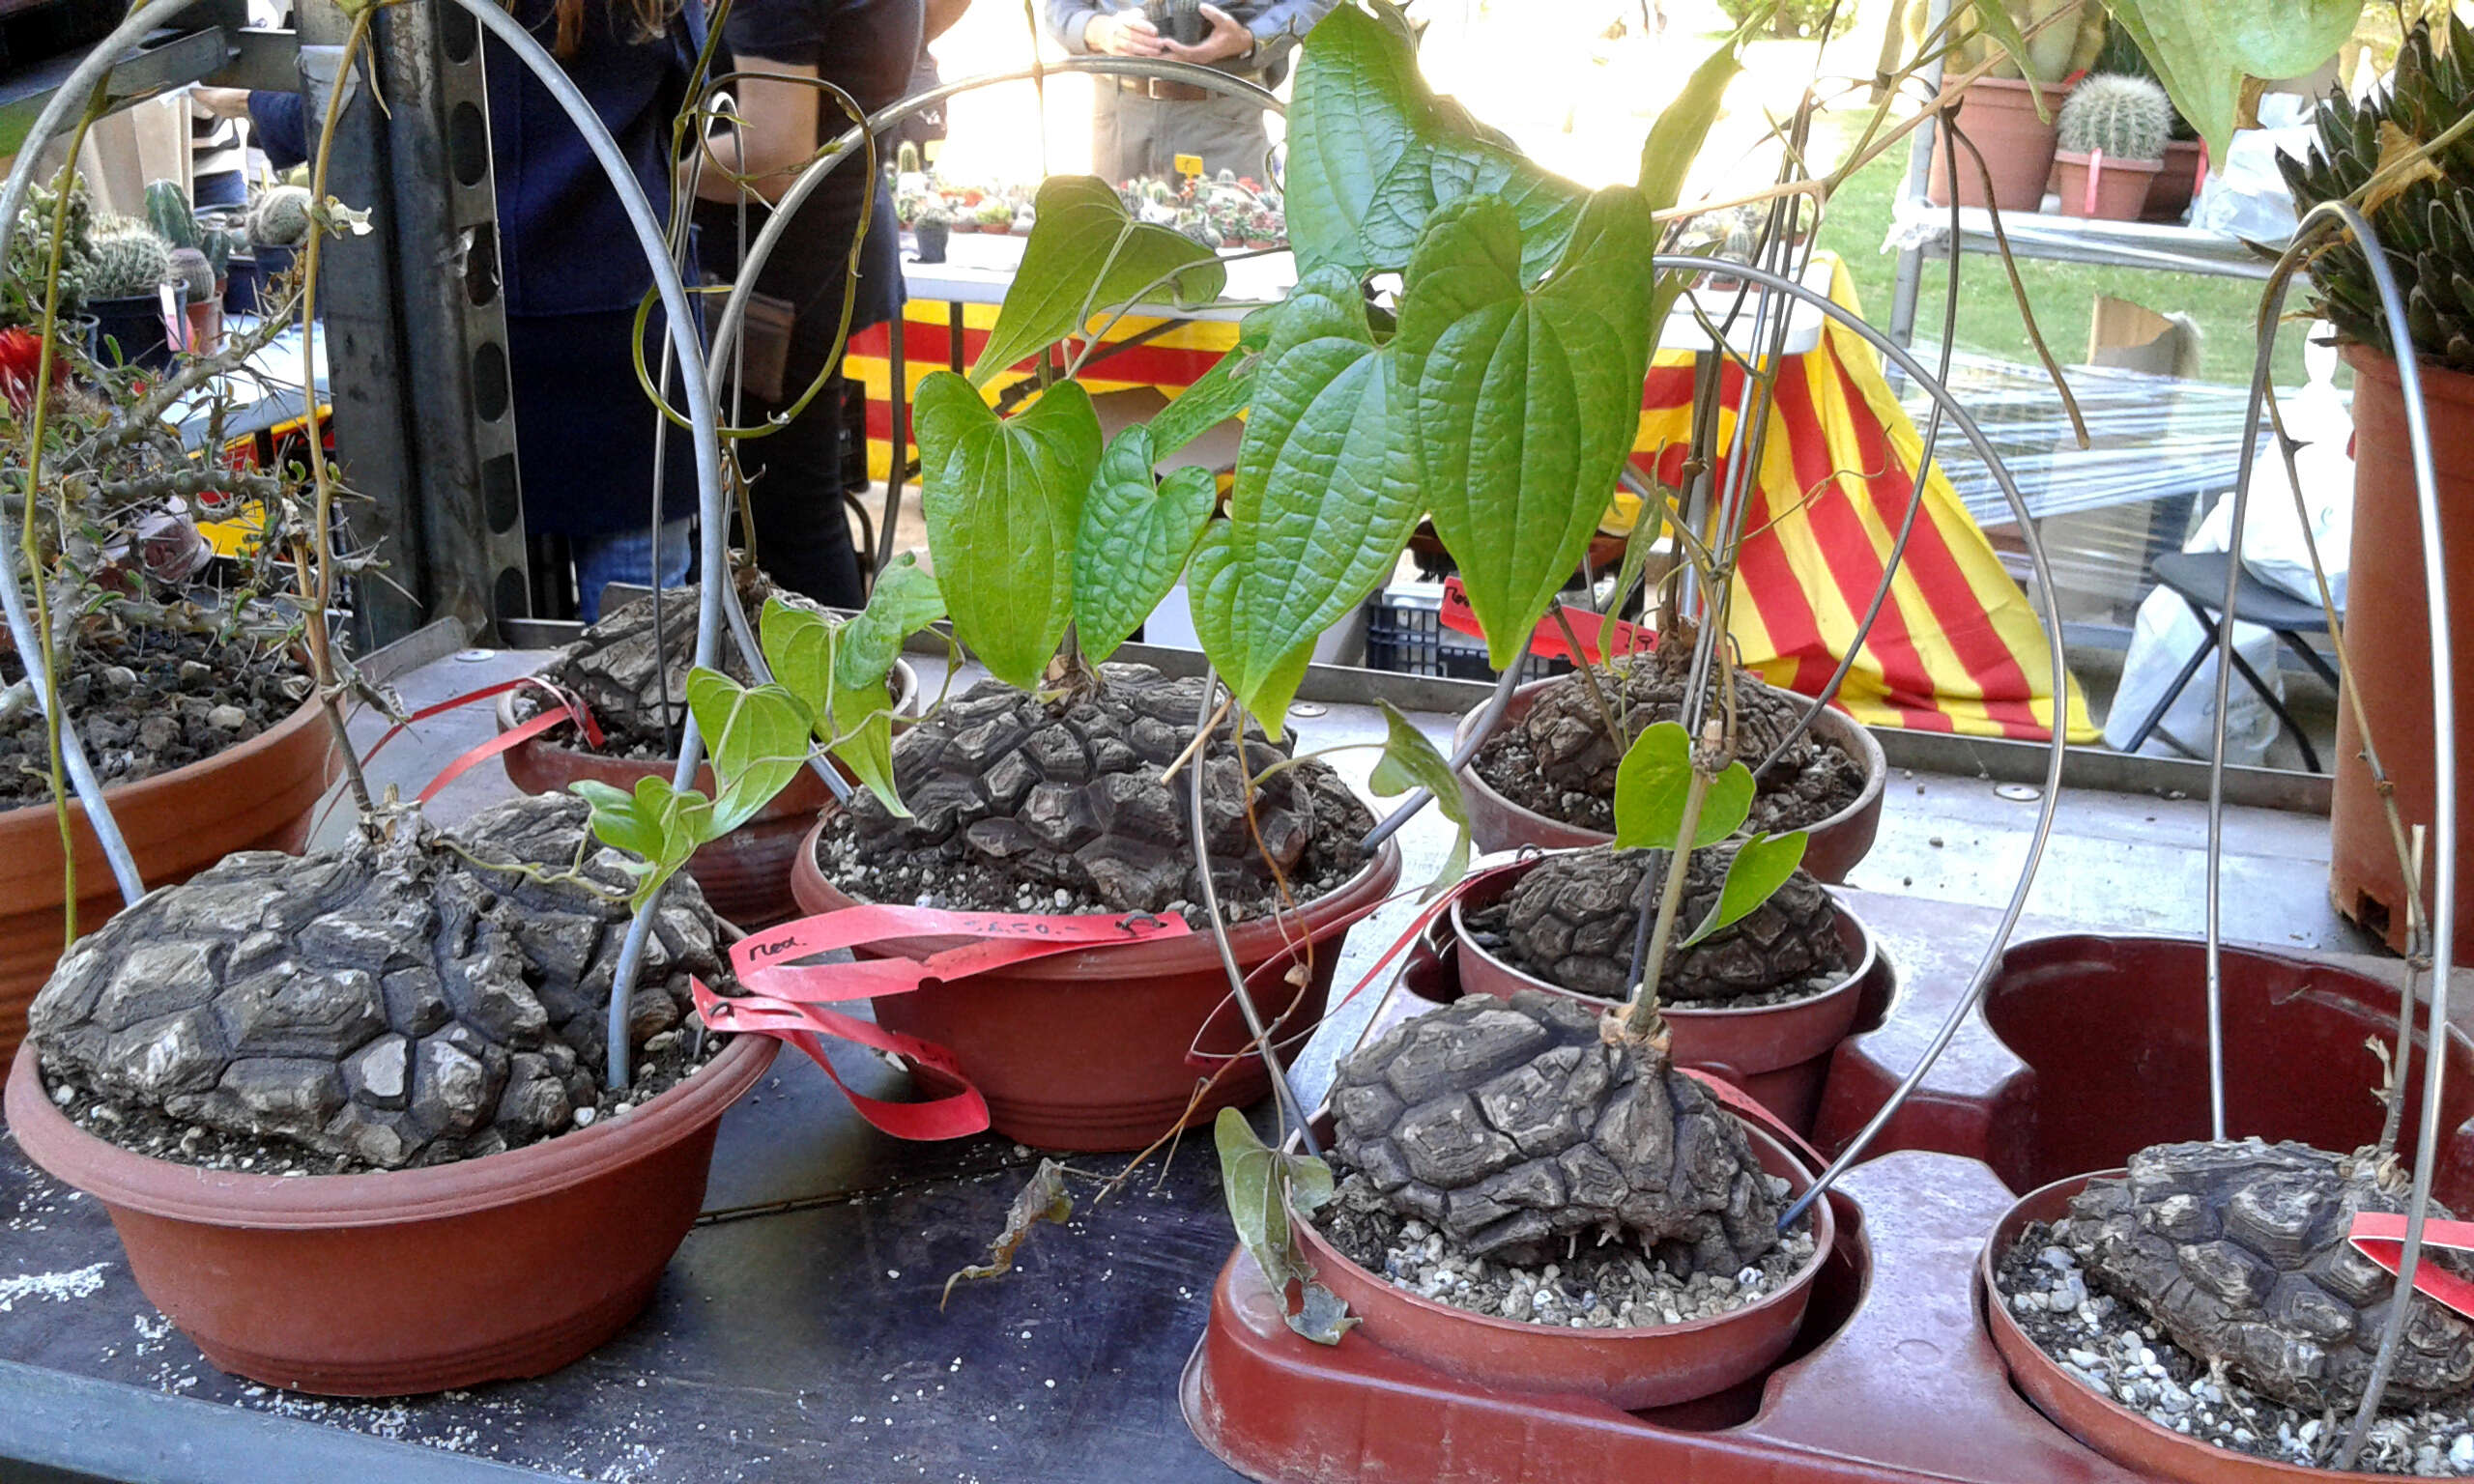 Image of Dioscorea mexicana Scheidw.